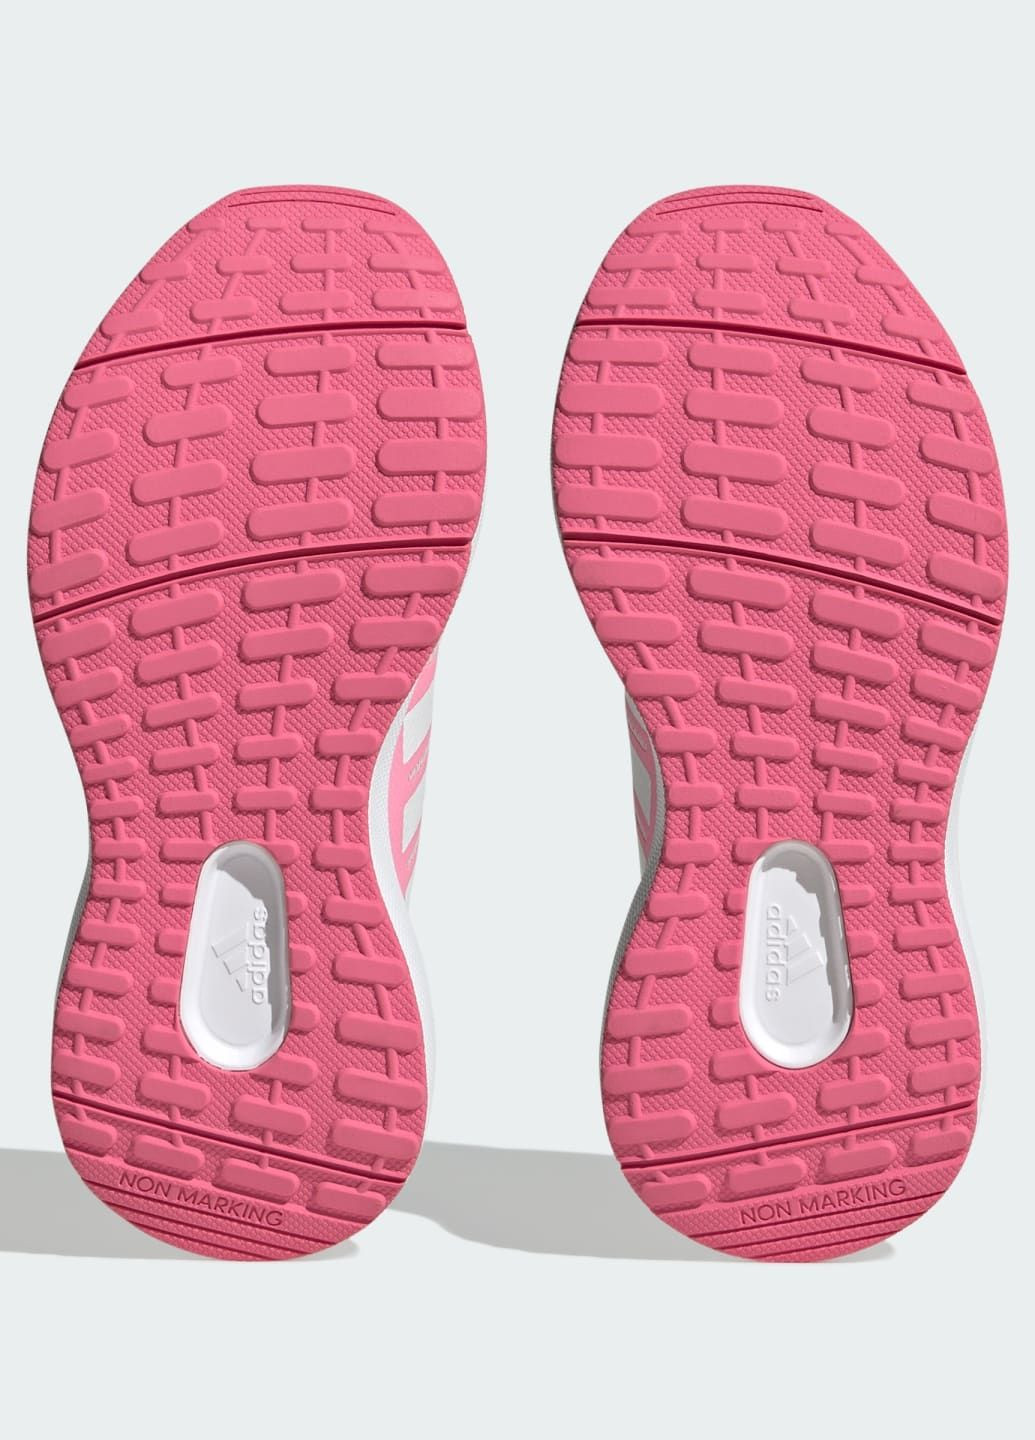 Рожеві всесезонні кросівки fortarun 2.0 cloudfoam lace adidas